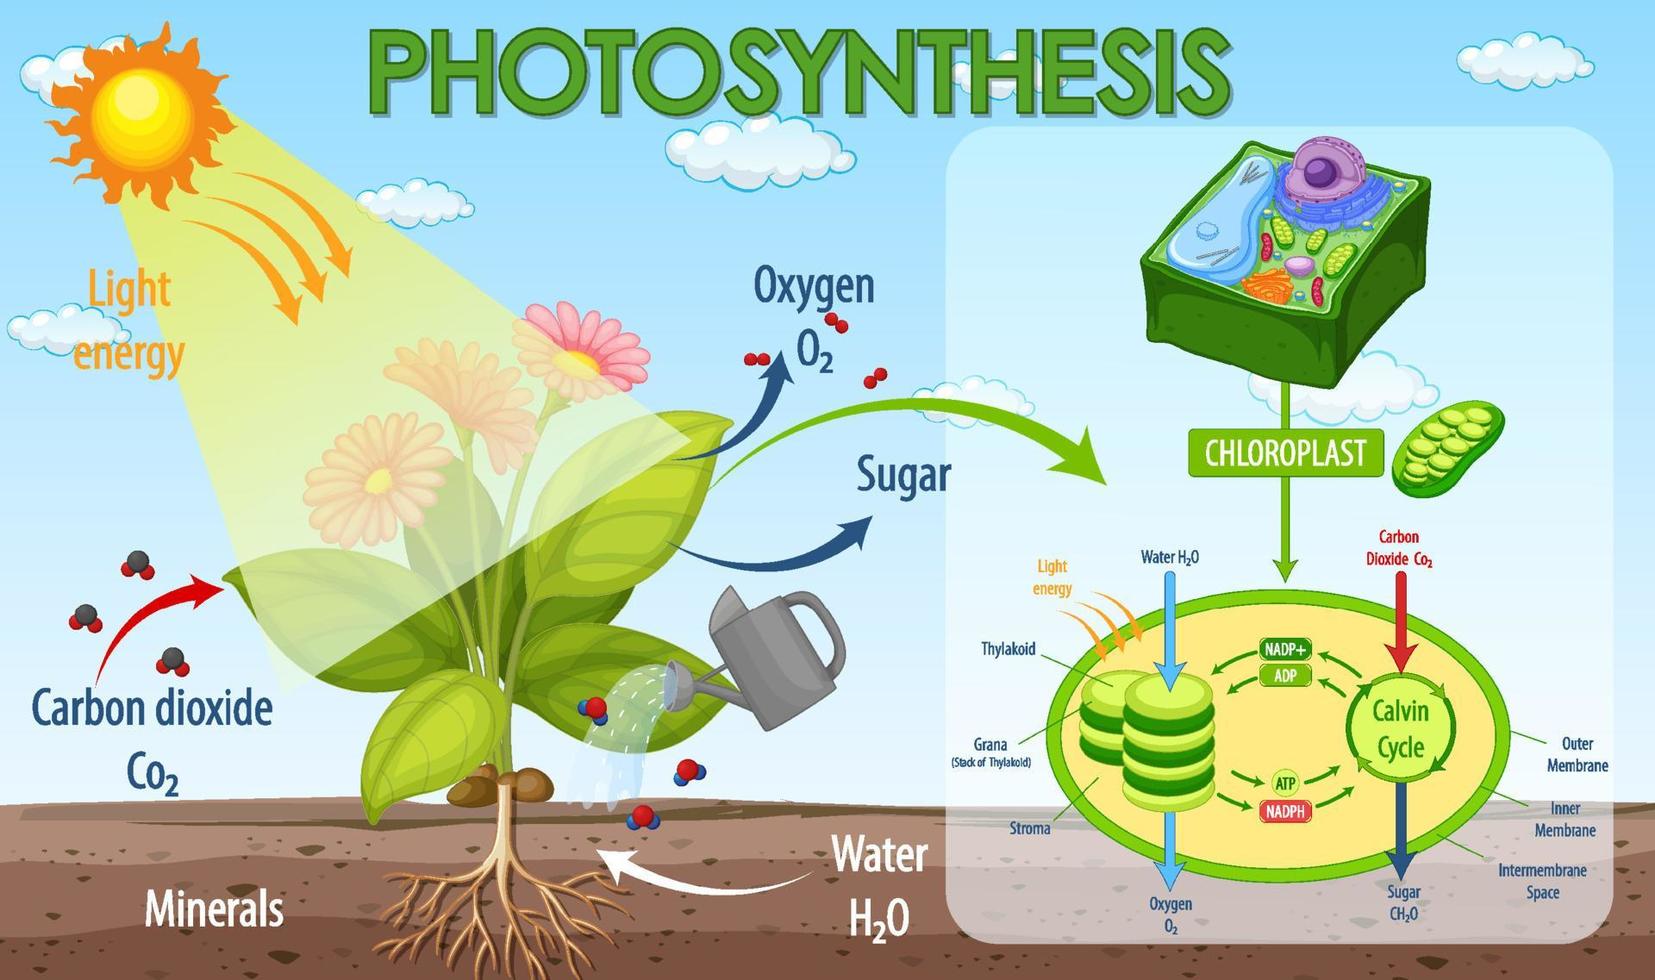 Diagramme montrant le processus de photosynthèse dans une plante vecteur